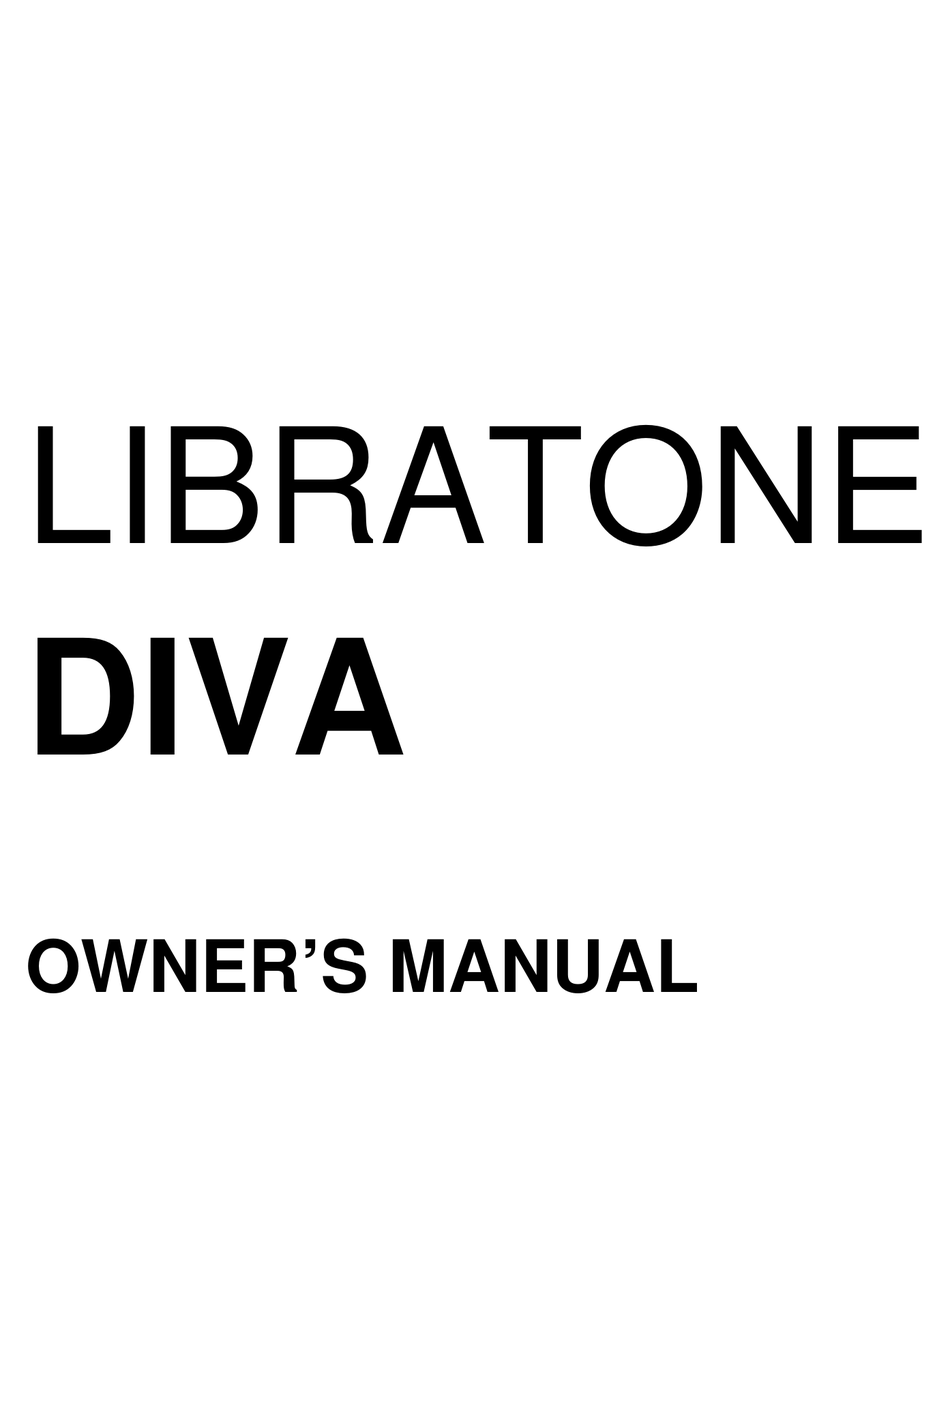 DIVA OWNER'S MANUAL Pdf Download | ManualsLib